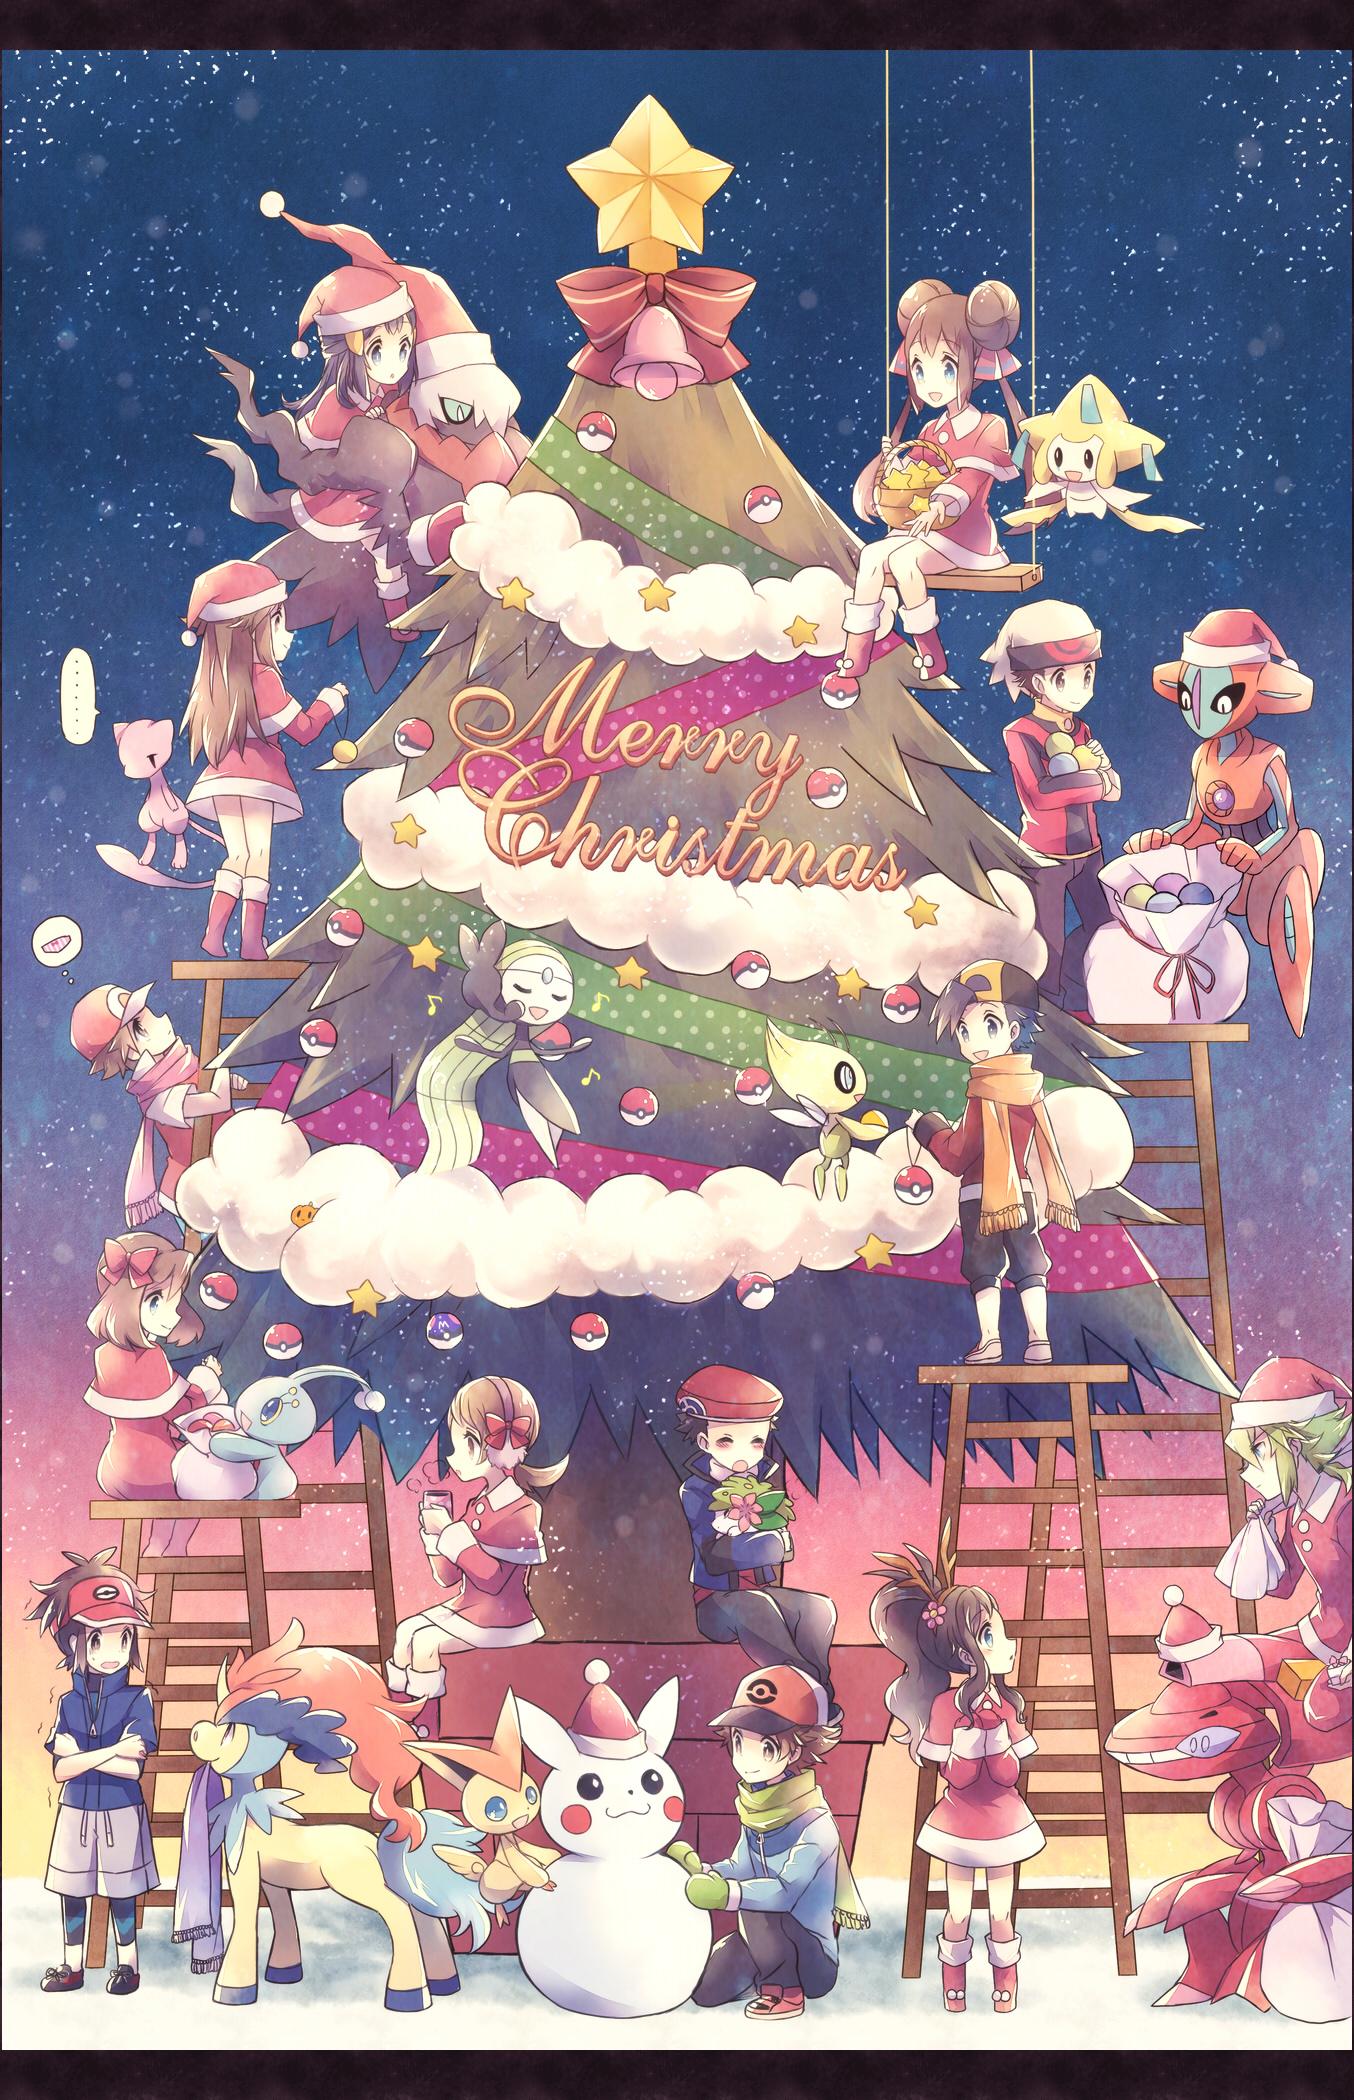 Christmas Pokemon Wallpapers